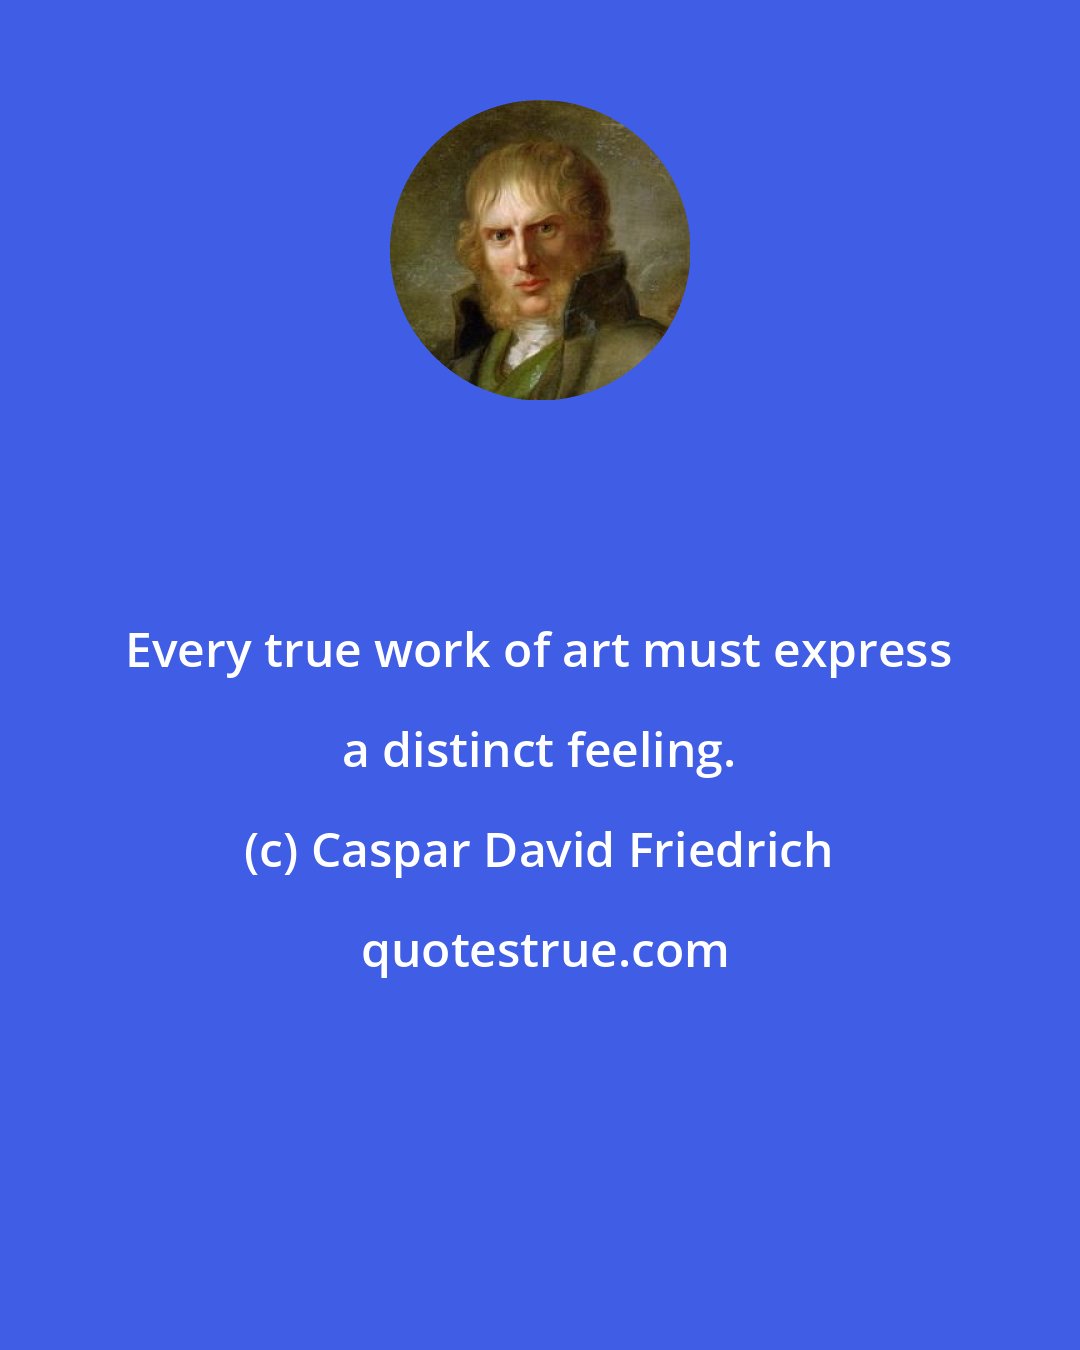 Caspar David Friedrich: Every true work of art must express a distinct feeling.